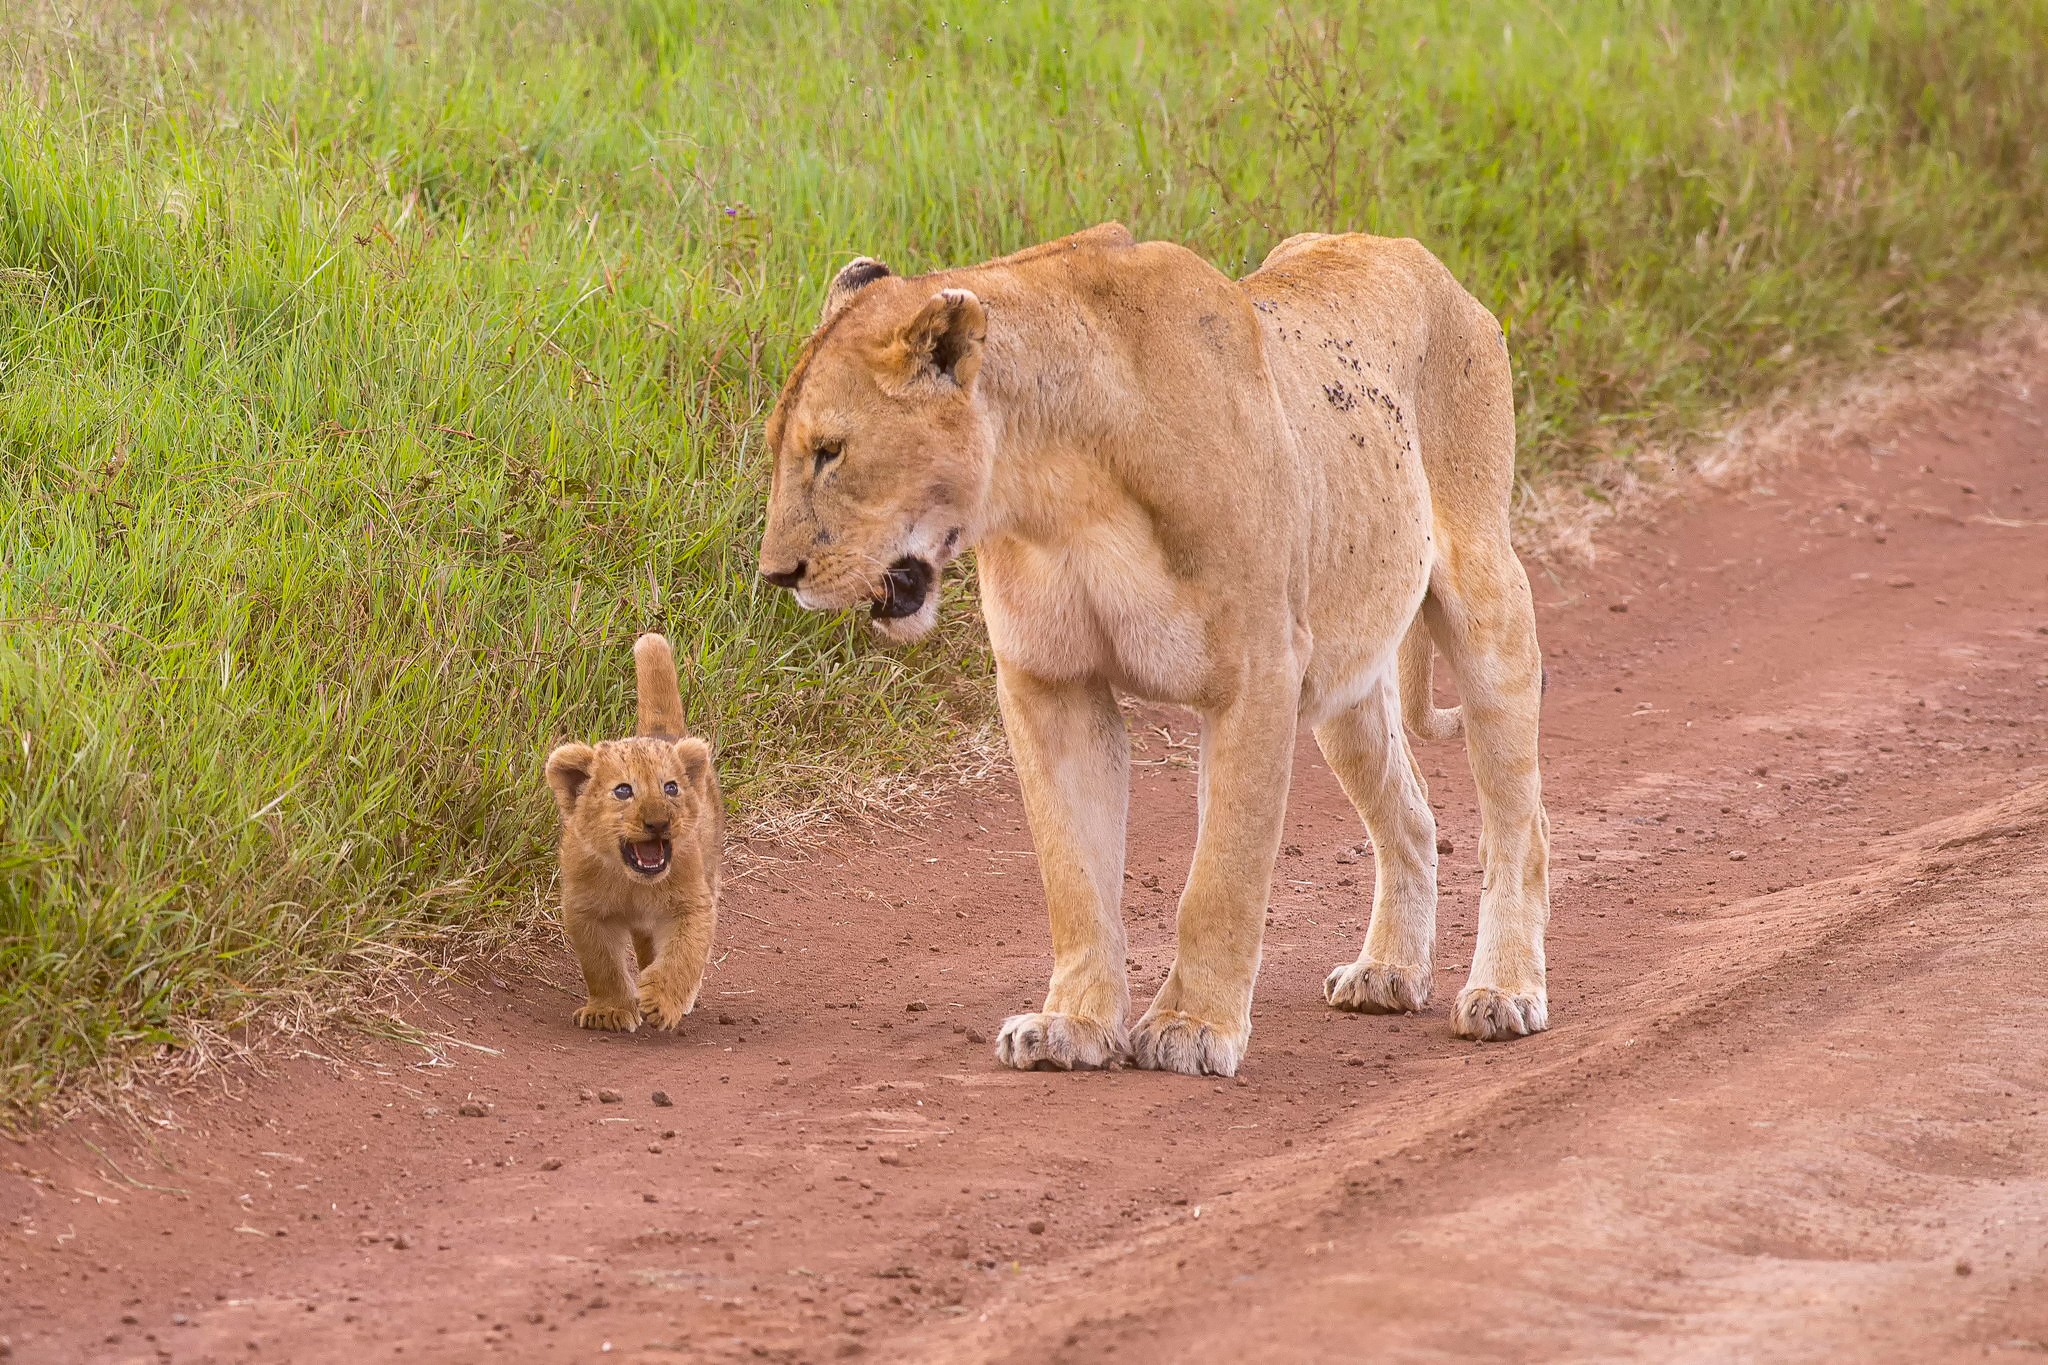 General 2048x1365 lion animals baby animals nature wildlife dirt mammals